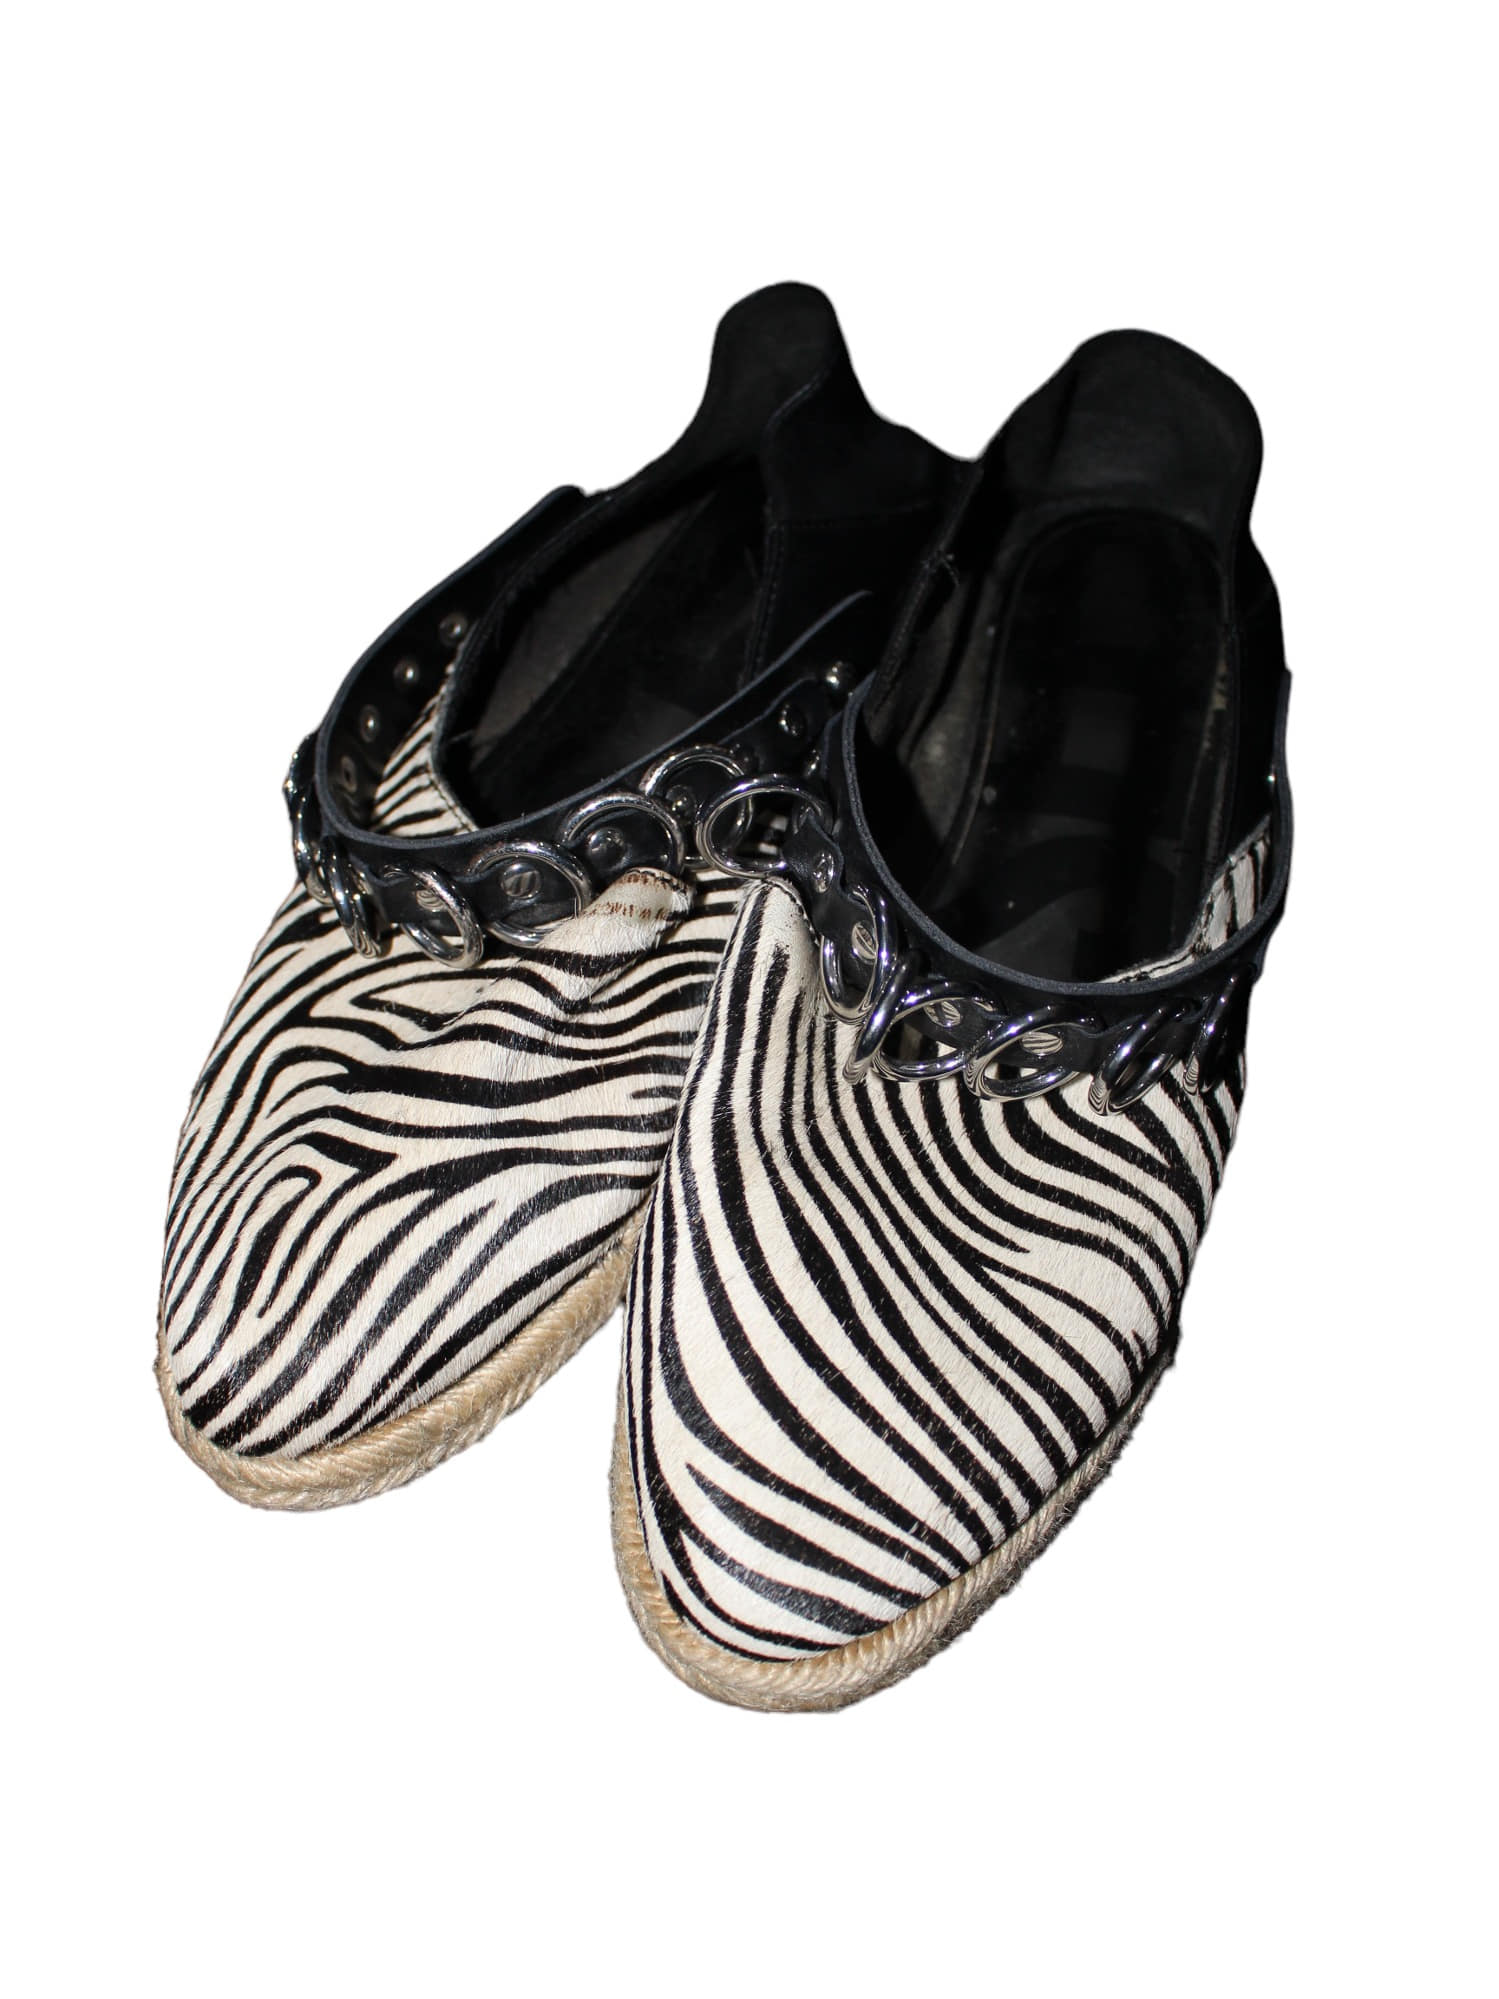 Diesel Zebra Pattern Flat Shoes EU 38